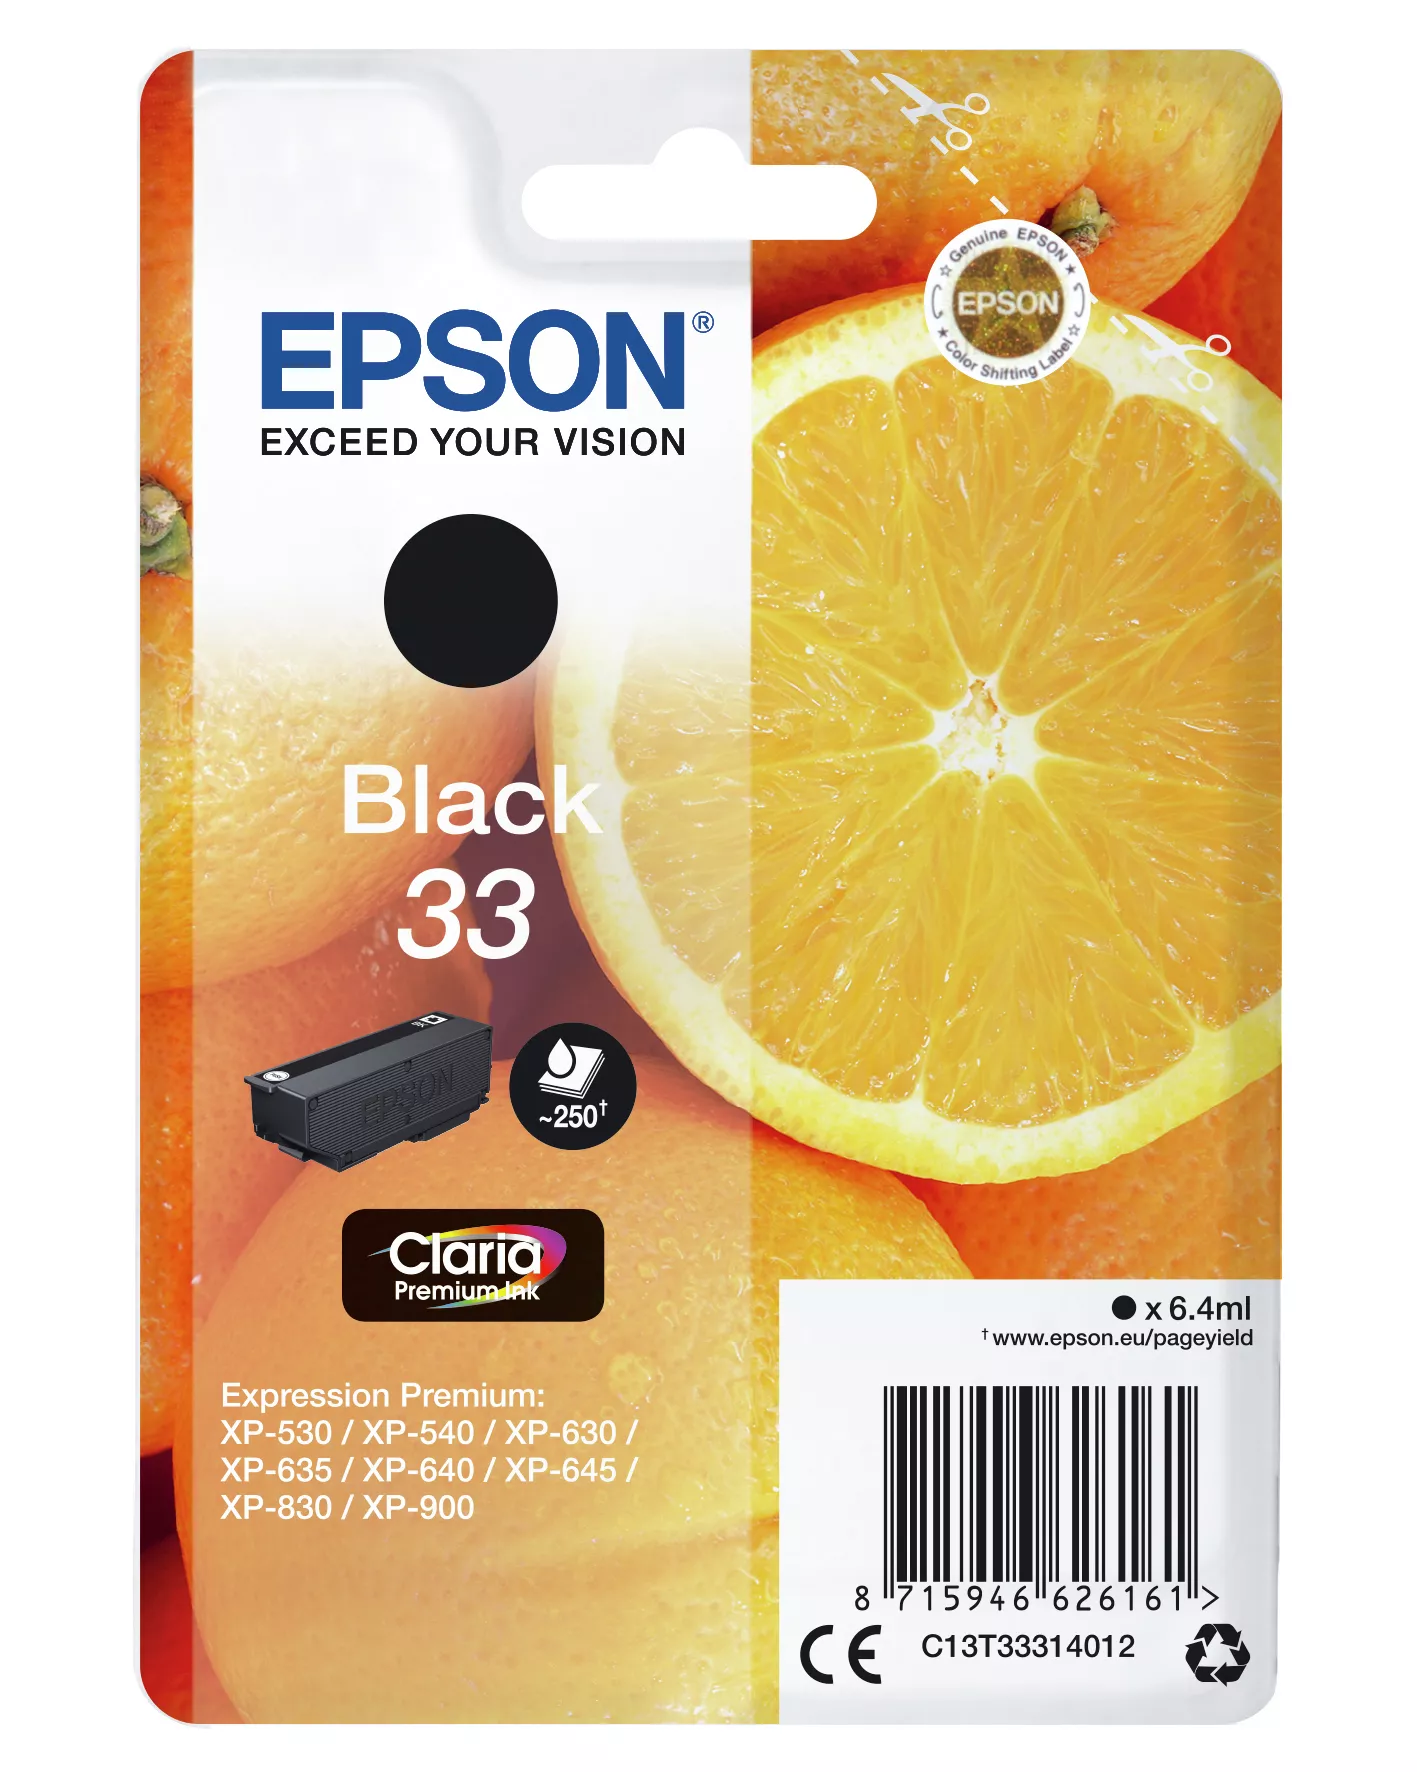 Achat EPSON Cartouche Oranges Encre Claria Premium Noir sur hello RSE - visuel 3